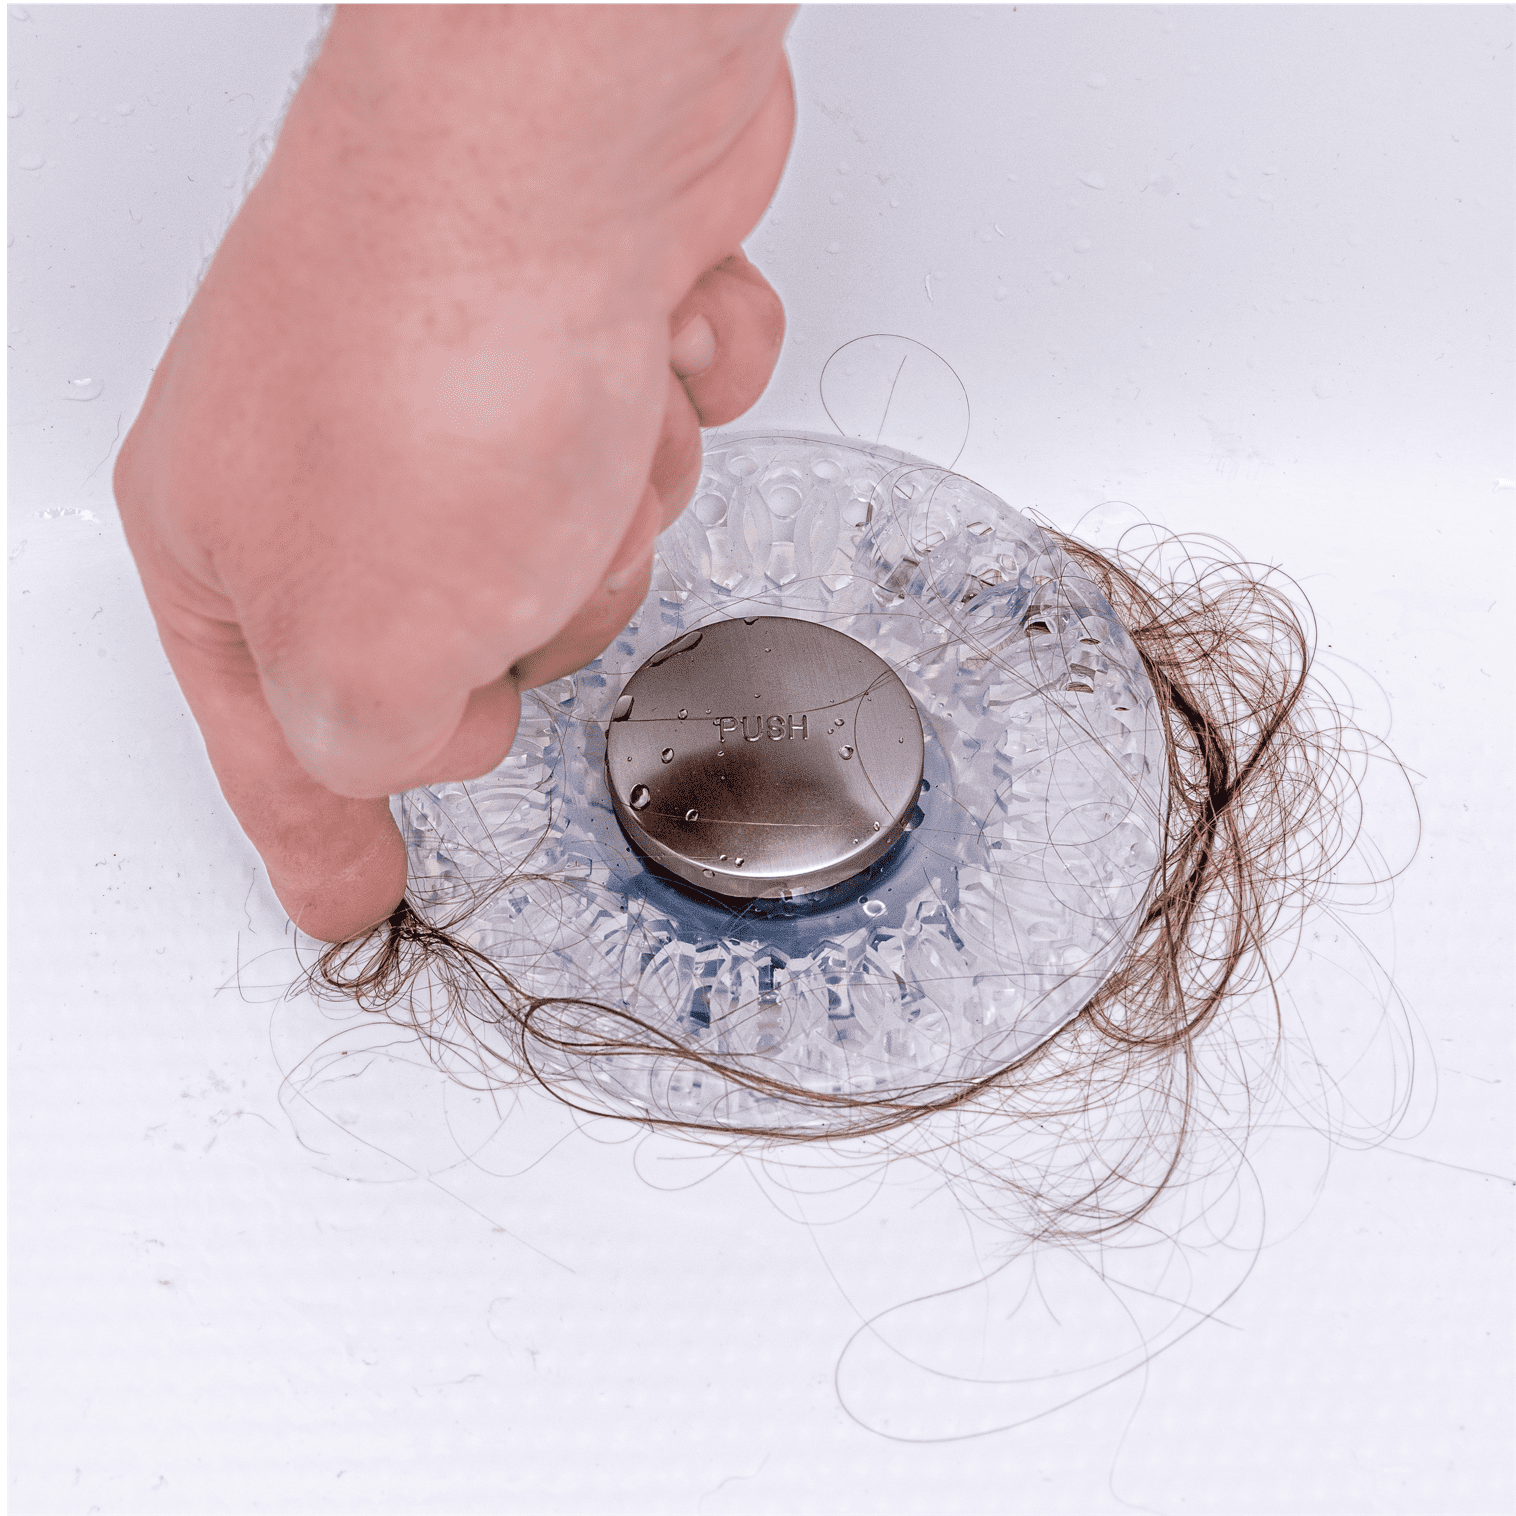 Pet Hair Strainer Drain Cover, How To Clear Bathtub Drain Of Hair